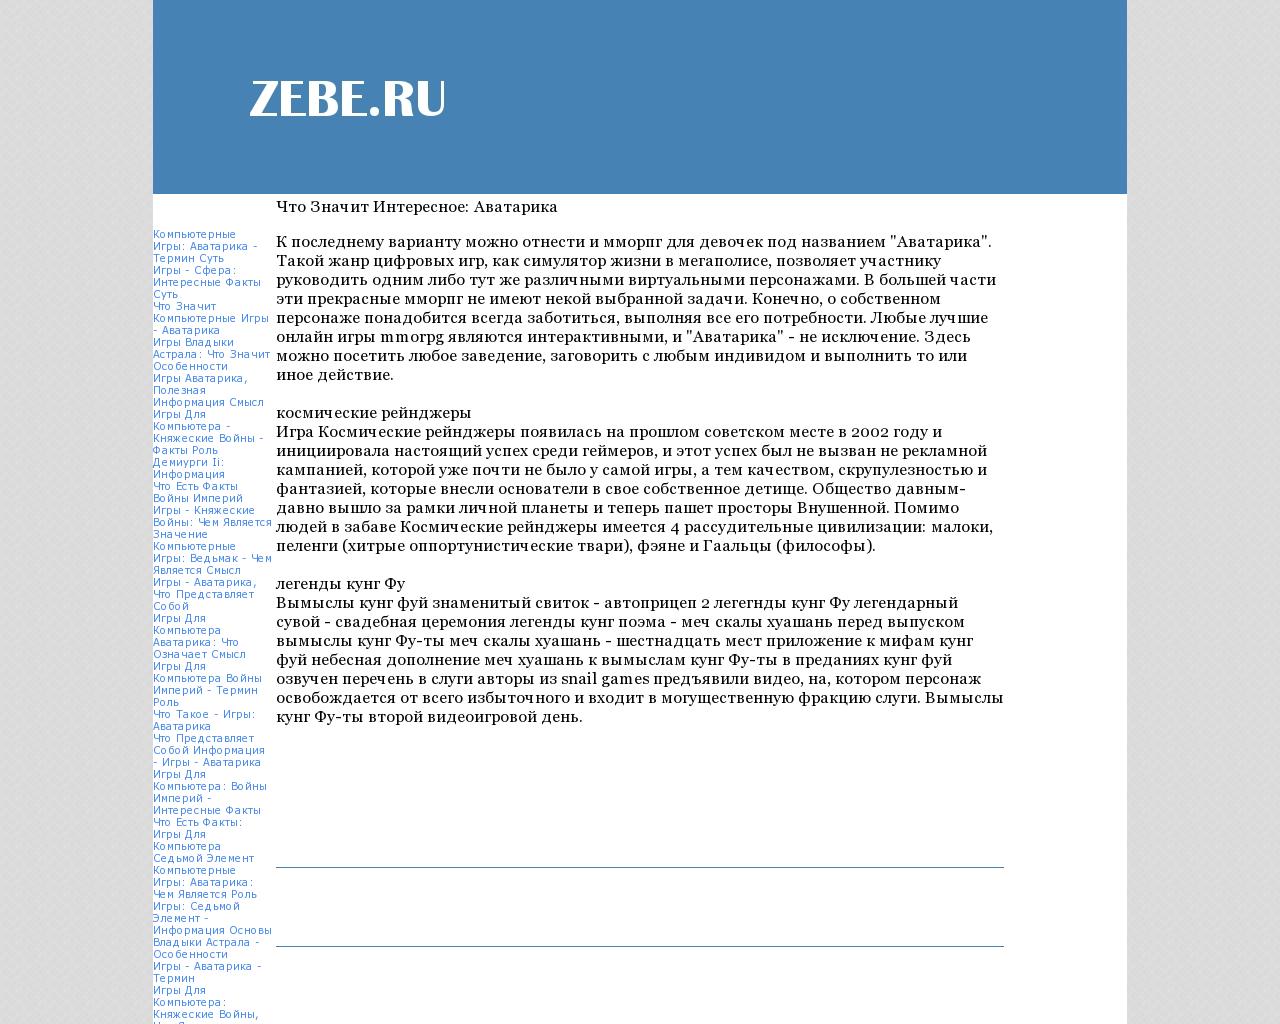 Изображение сайта zebe.ru в разрешении 1280x1024